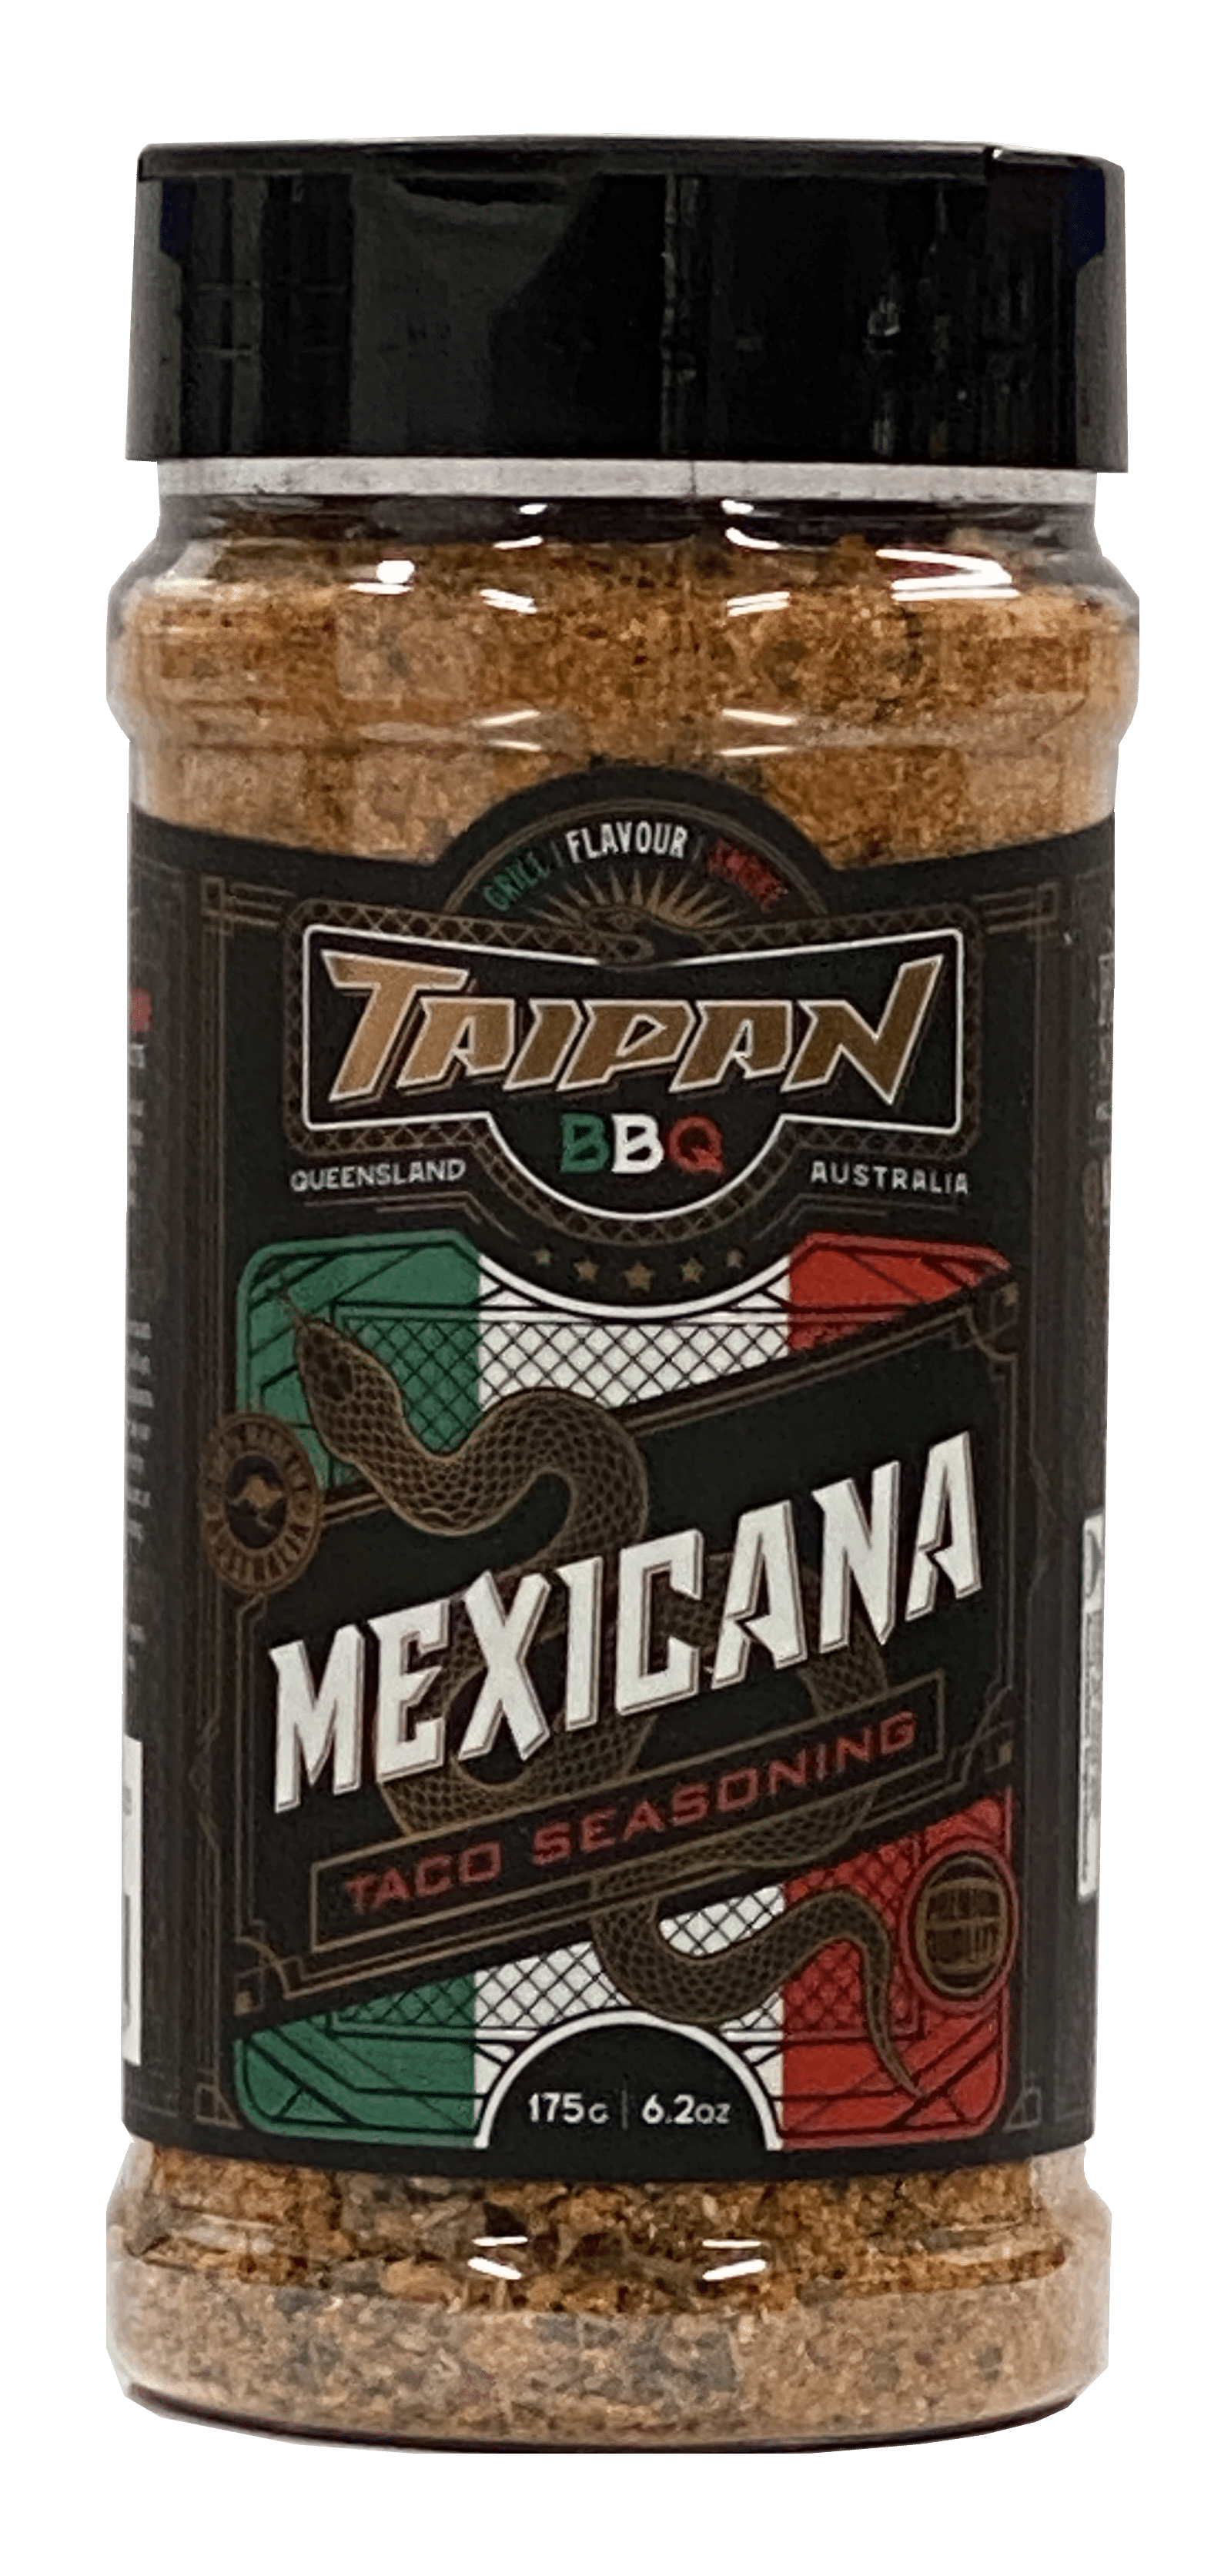 Mexicana Taco Seasoning